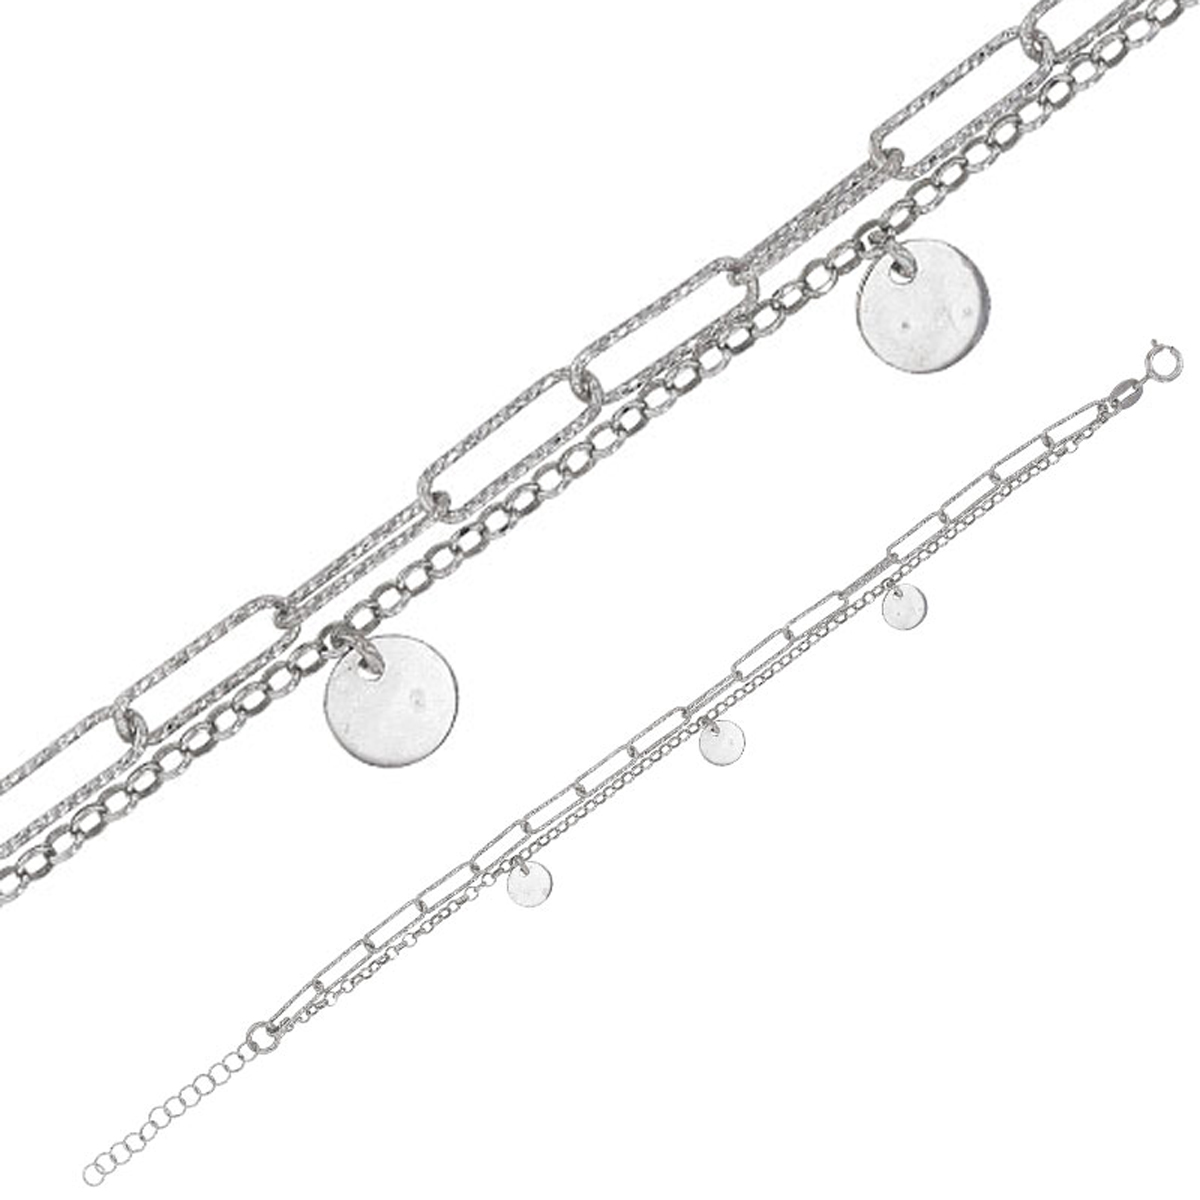 Bracelet Argent artisanal \'Cléopatra\' argenté (rhodié) - 6 mm (2 rangs) trombone - [R4993]